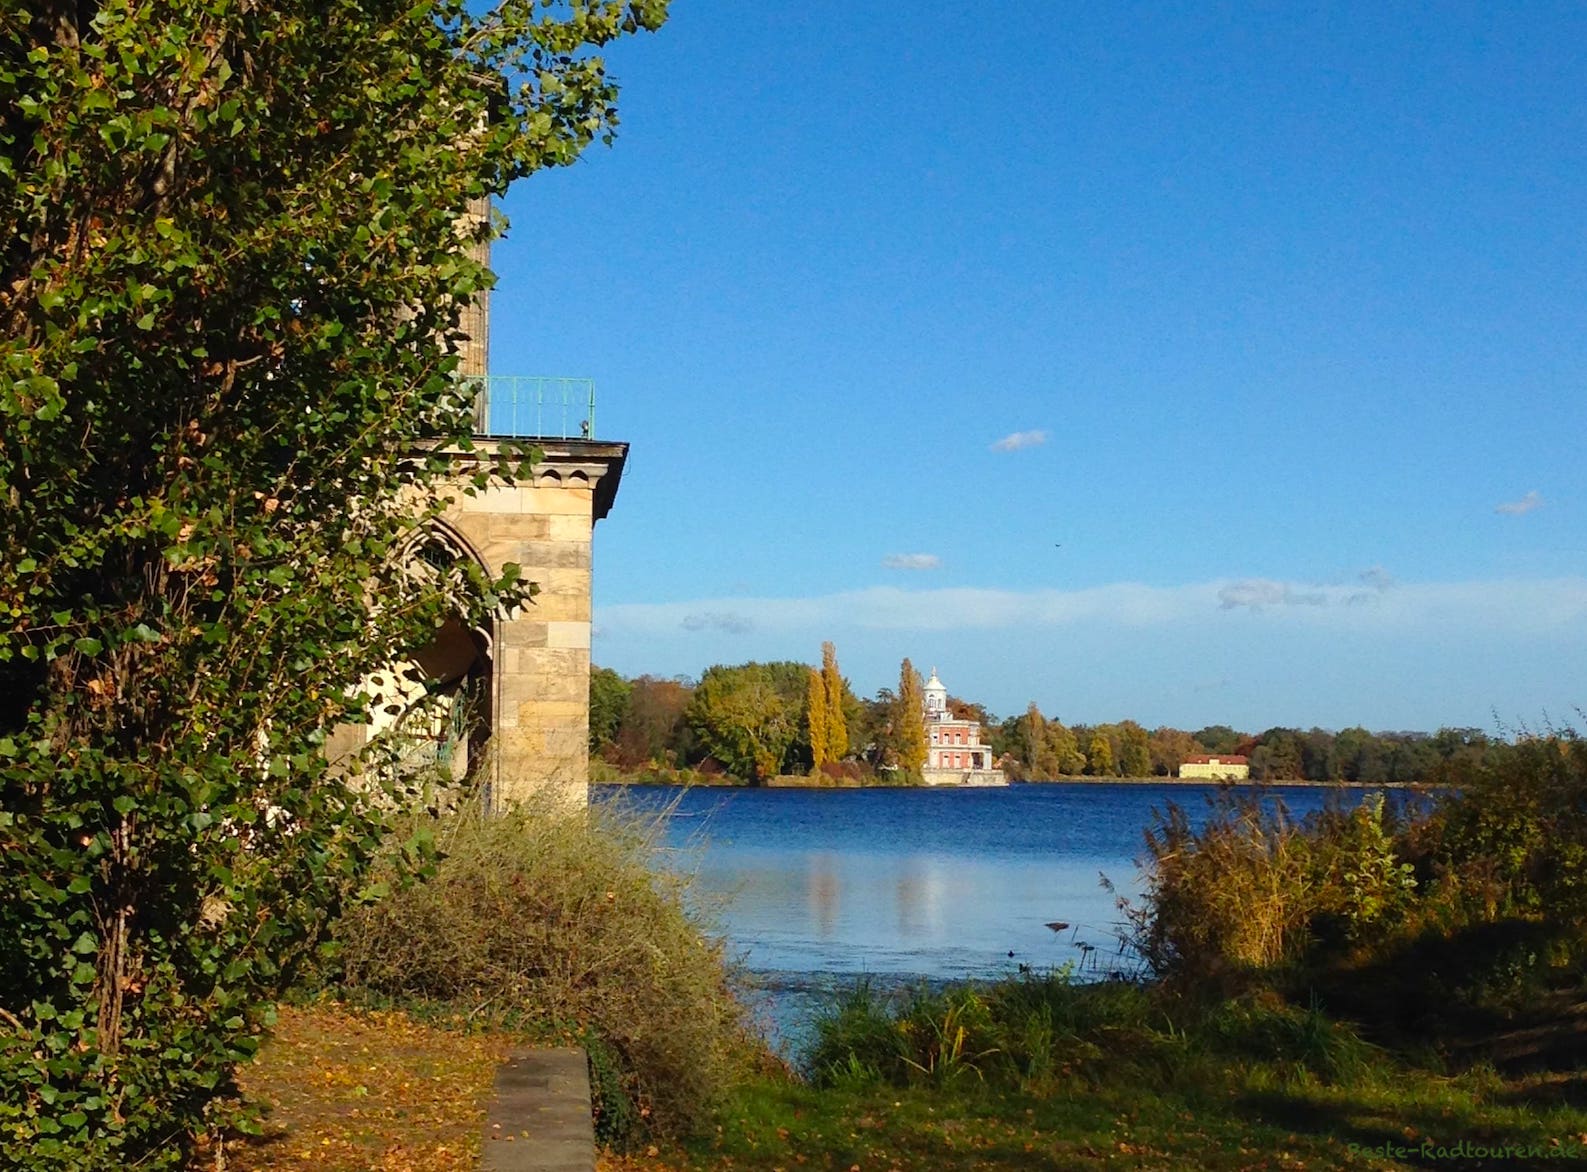 Radtour 78: Havel, Seen und alte Kultur: Von Potsdam nach Hennigsdorf